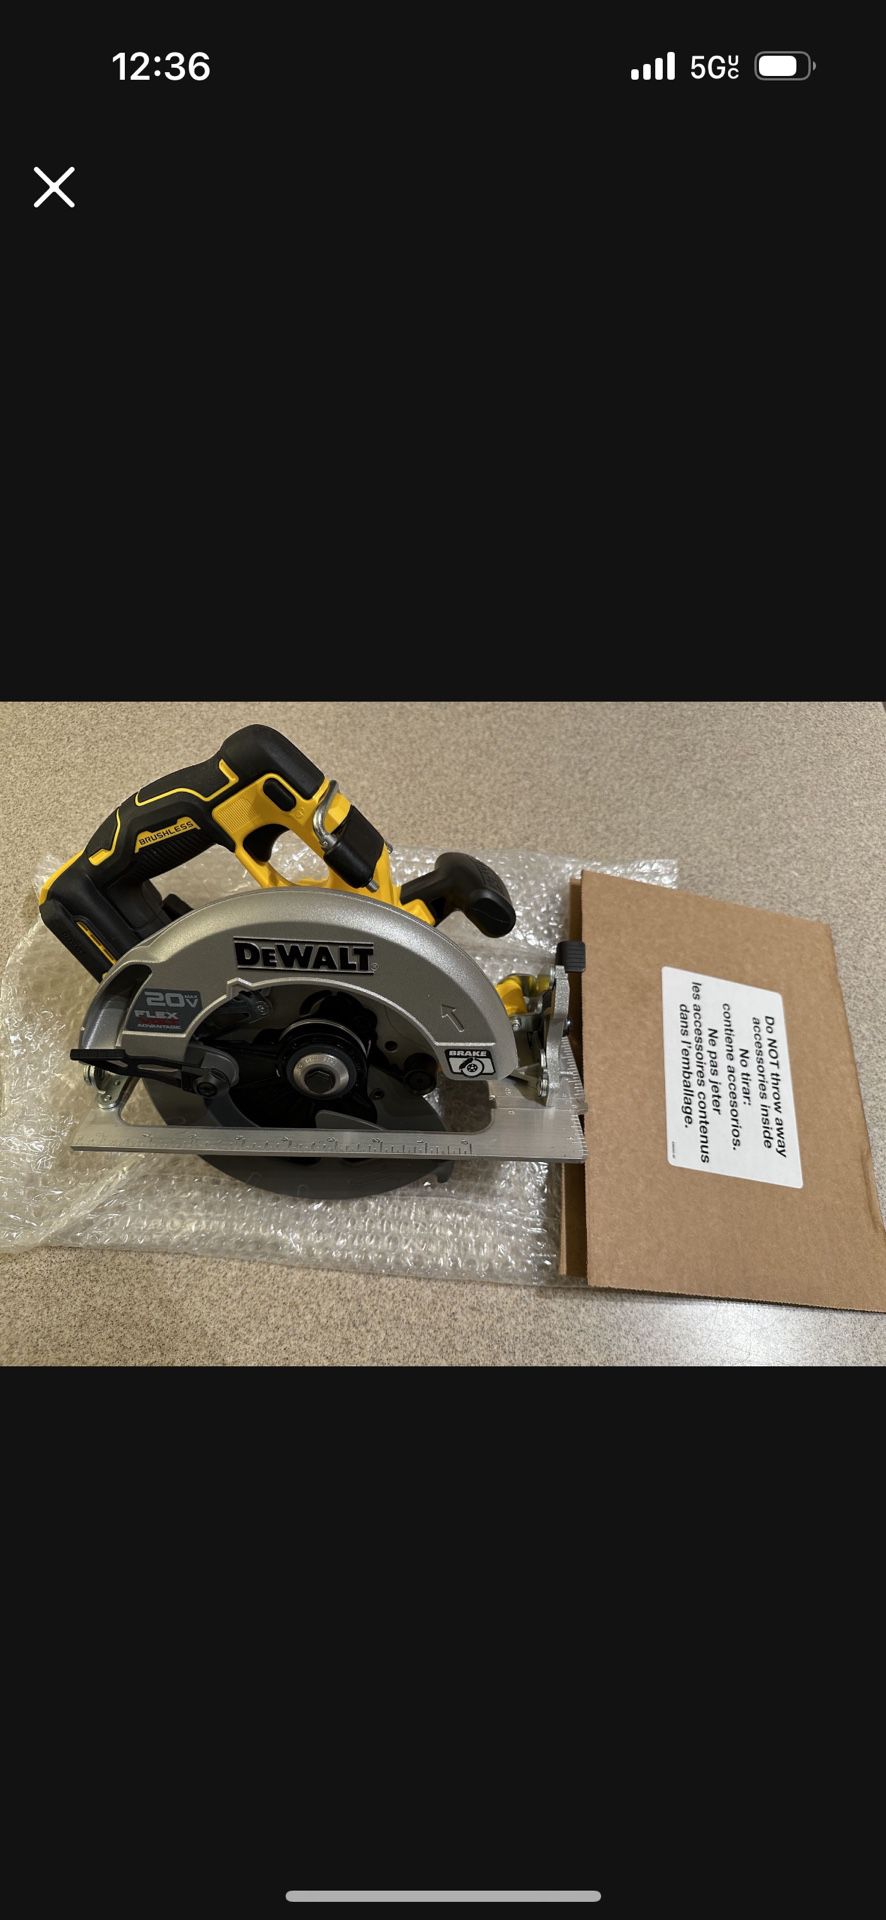 Brand new Dewalt 20V/Flex 7 1/4 circular saw, tool only